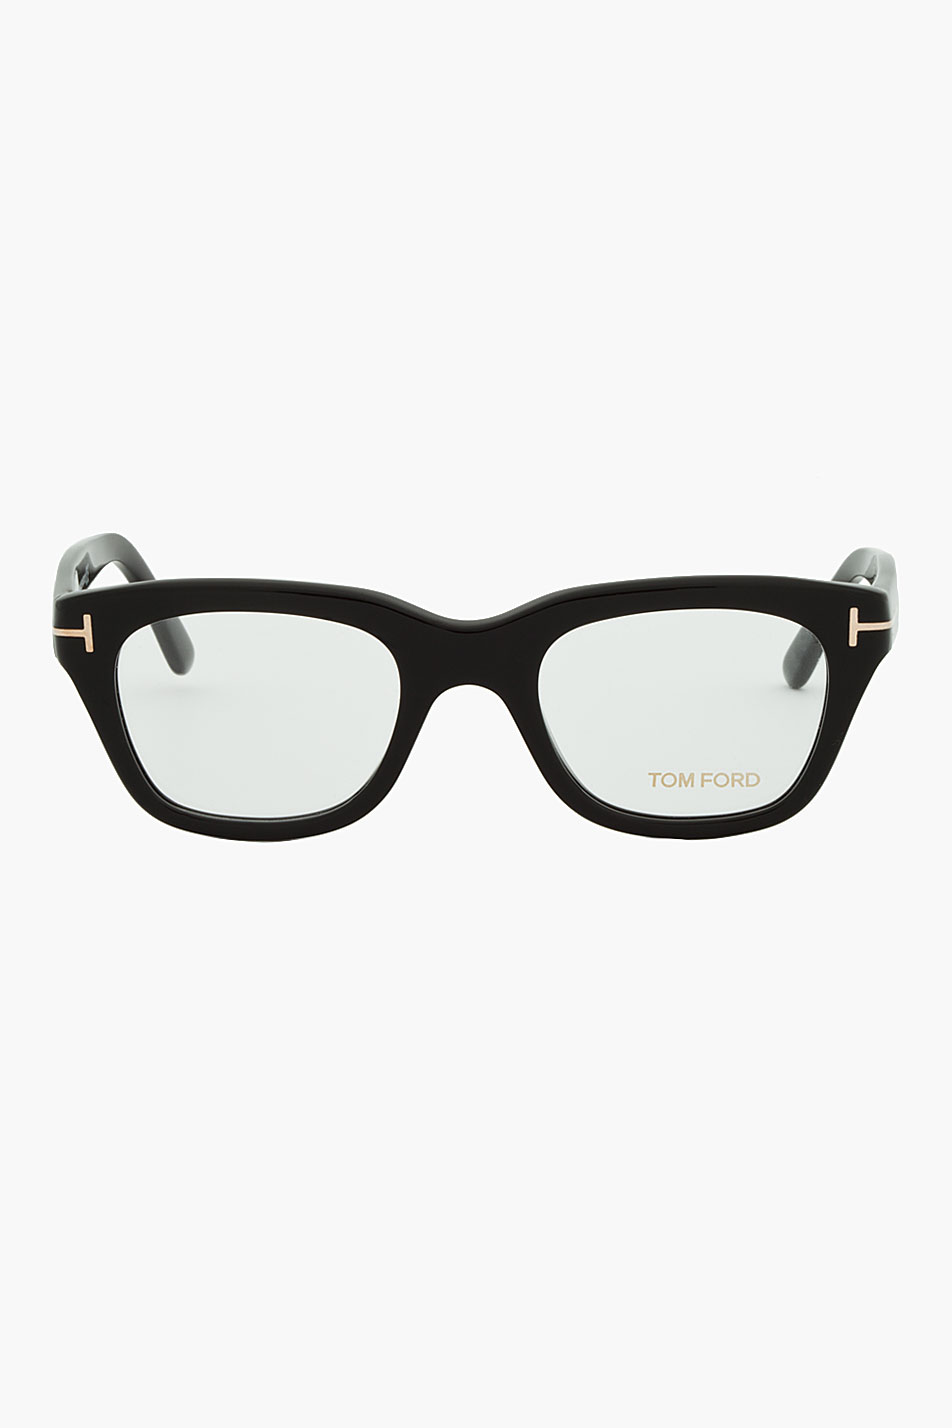 Tom Ford Black Thick Frame Cat Eye Glasses for Men | Lyst